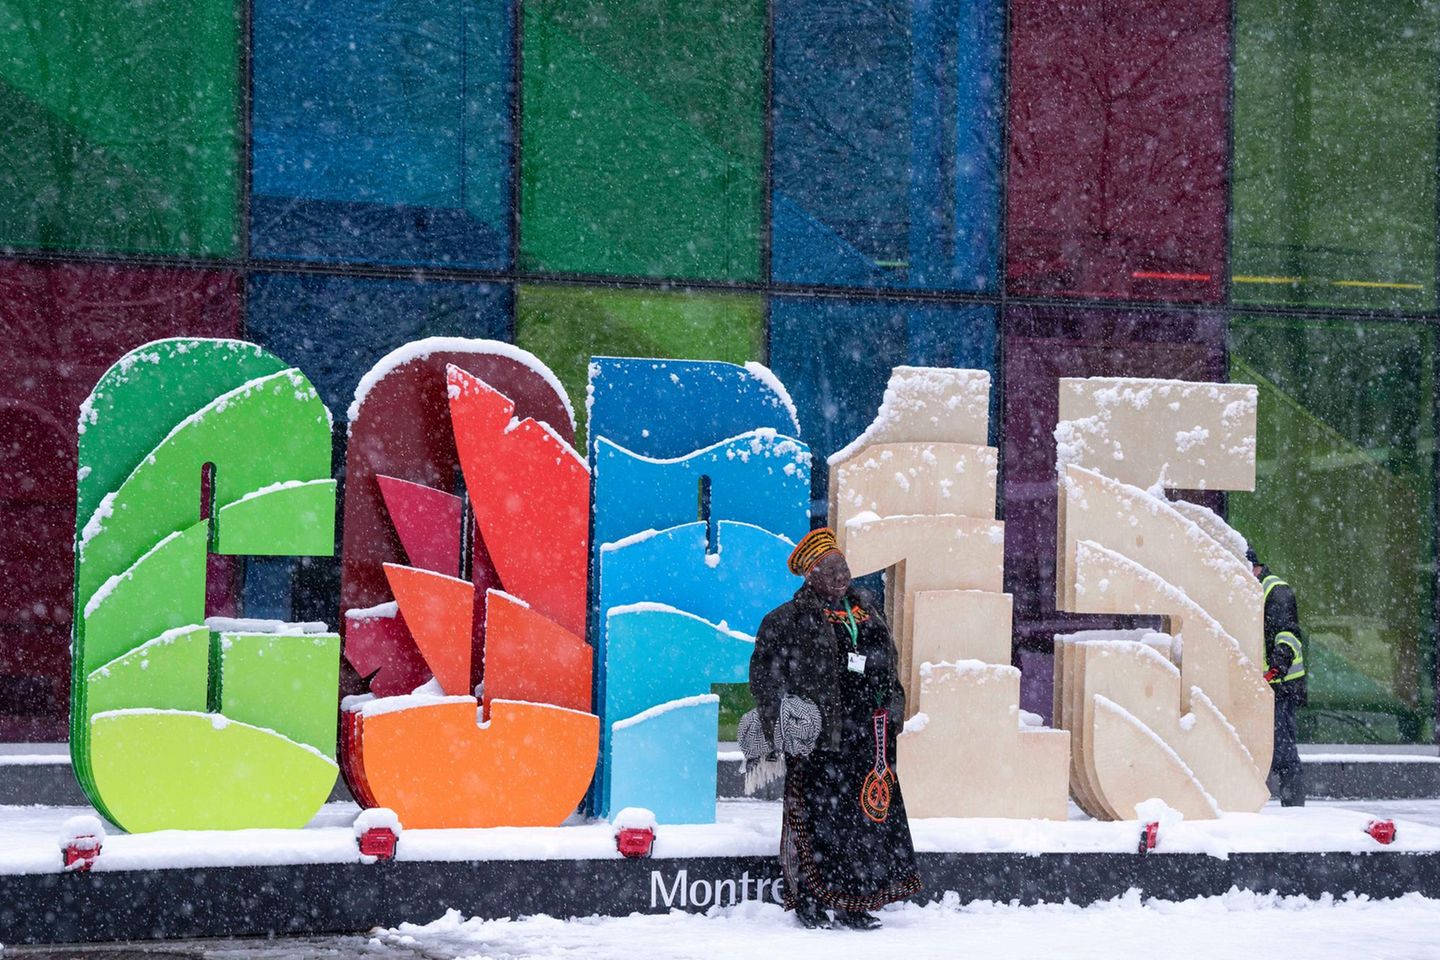 Ein Delegierter der Weltnaturkonferenz in Montreal posiert im Schneetreiben für einen Schnappschuss